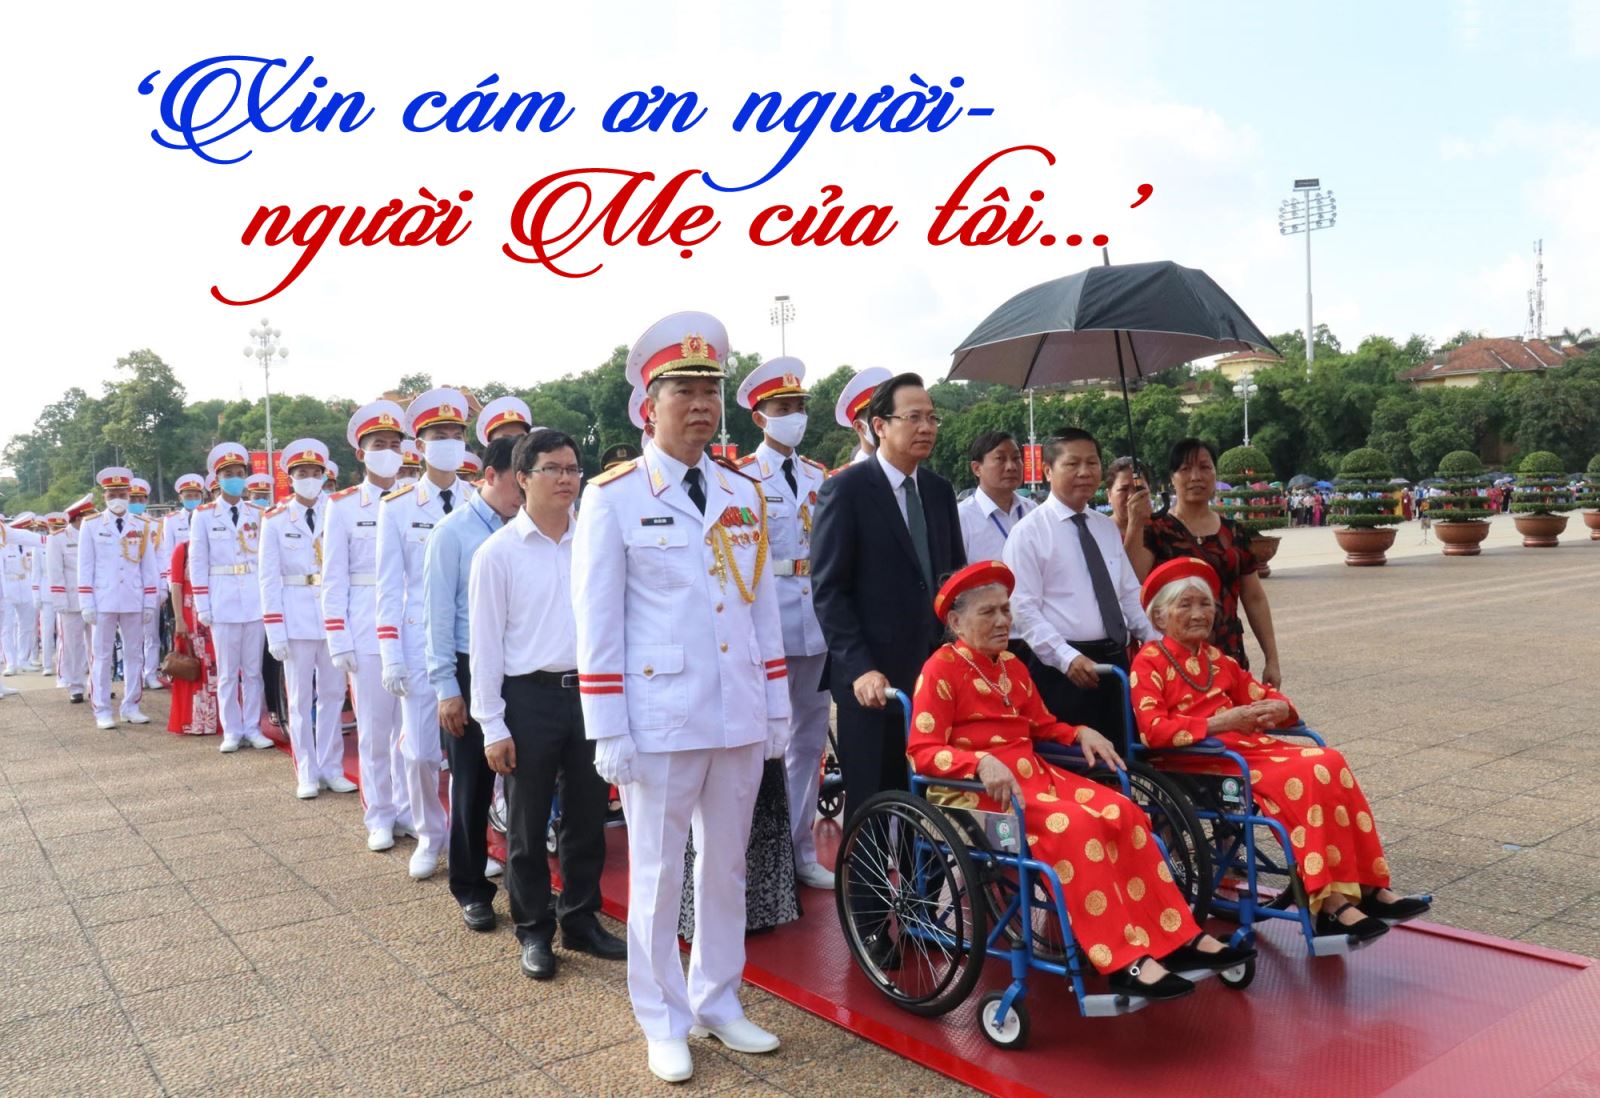 Mẹ Việt Nam anh hùng: Hình ảnh này là một sự tôn vinh đến tất cả các mẹ Việt Nam anh hùng qua các thời kỳ. Hãy cùng chúng tôi chiêm ngưỡng và học hỏi từ bức hình này để chúng ta có thể trân trọng và ghi nhận sự hy sinh của các mẹ hiền Việt Nam.